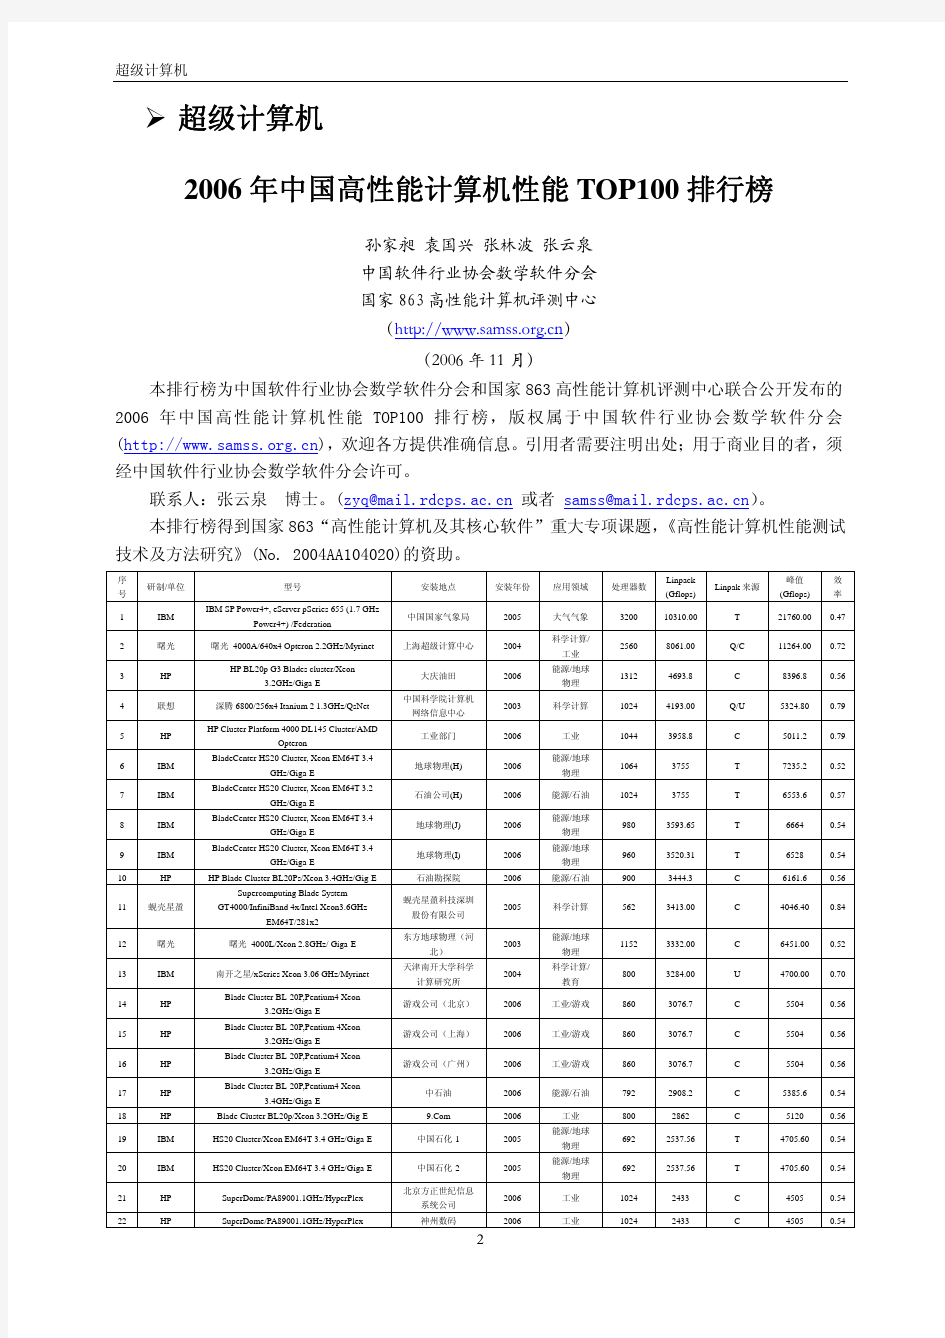 超级计算机-论文  2007中国高性能计算机性能TOP100 排行榜.